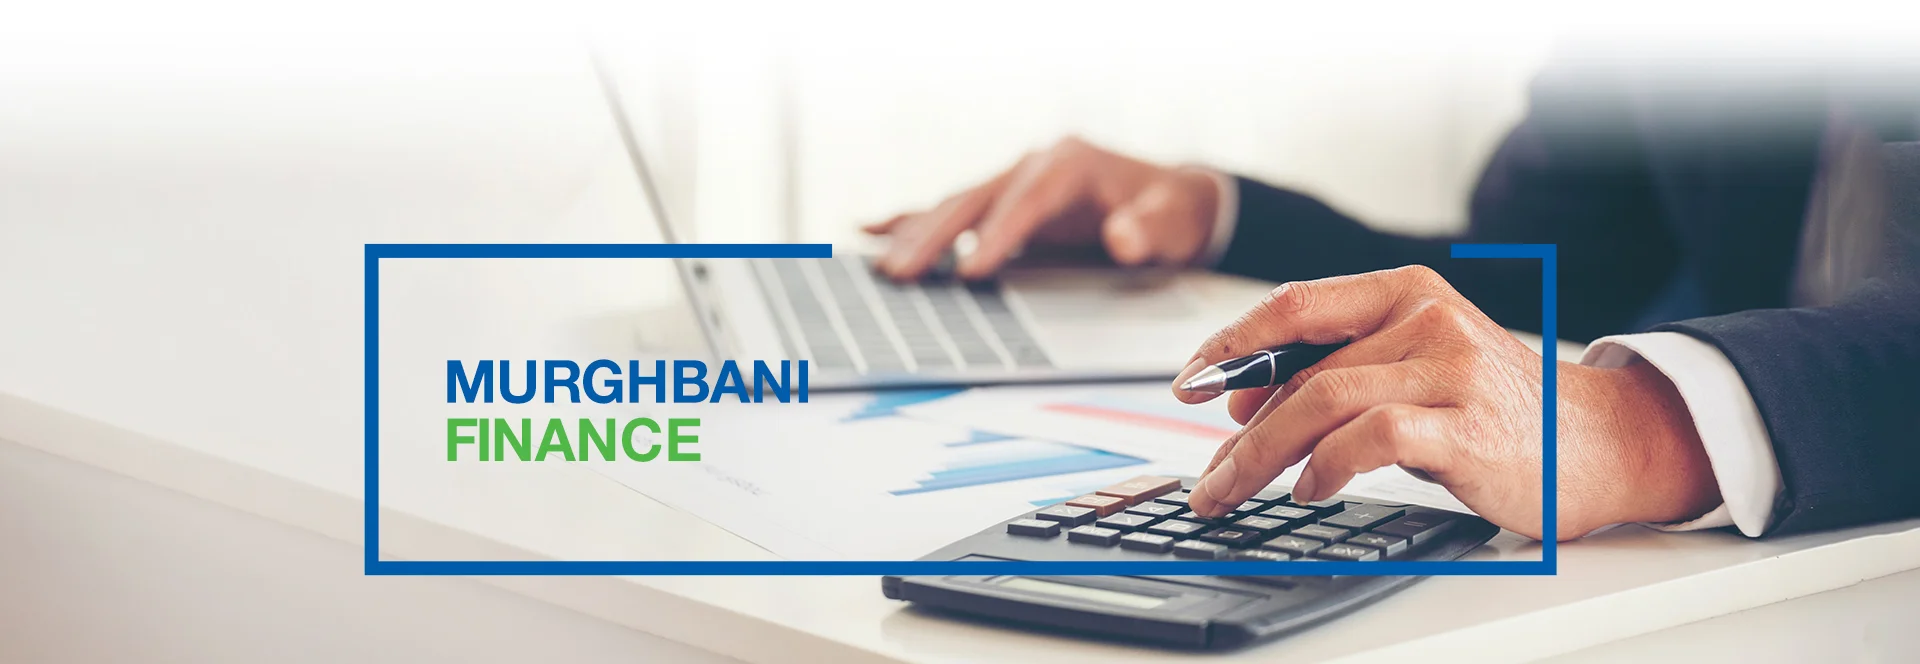 Murghbani Finance